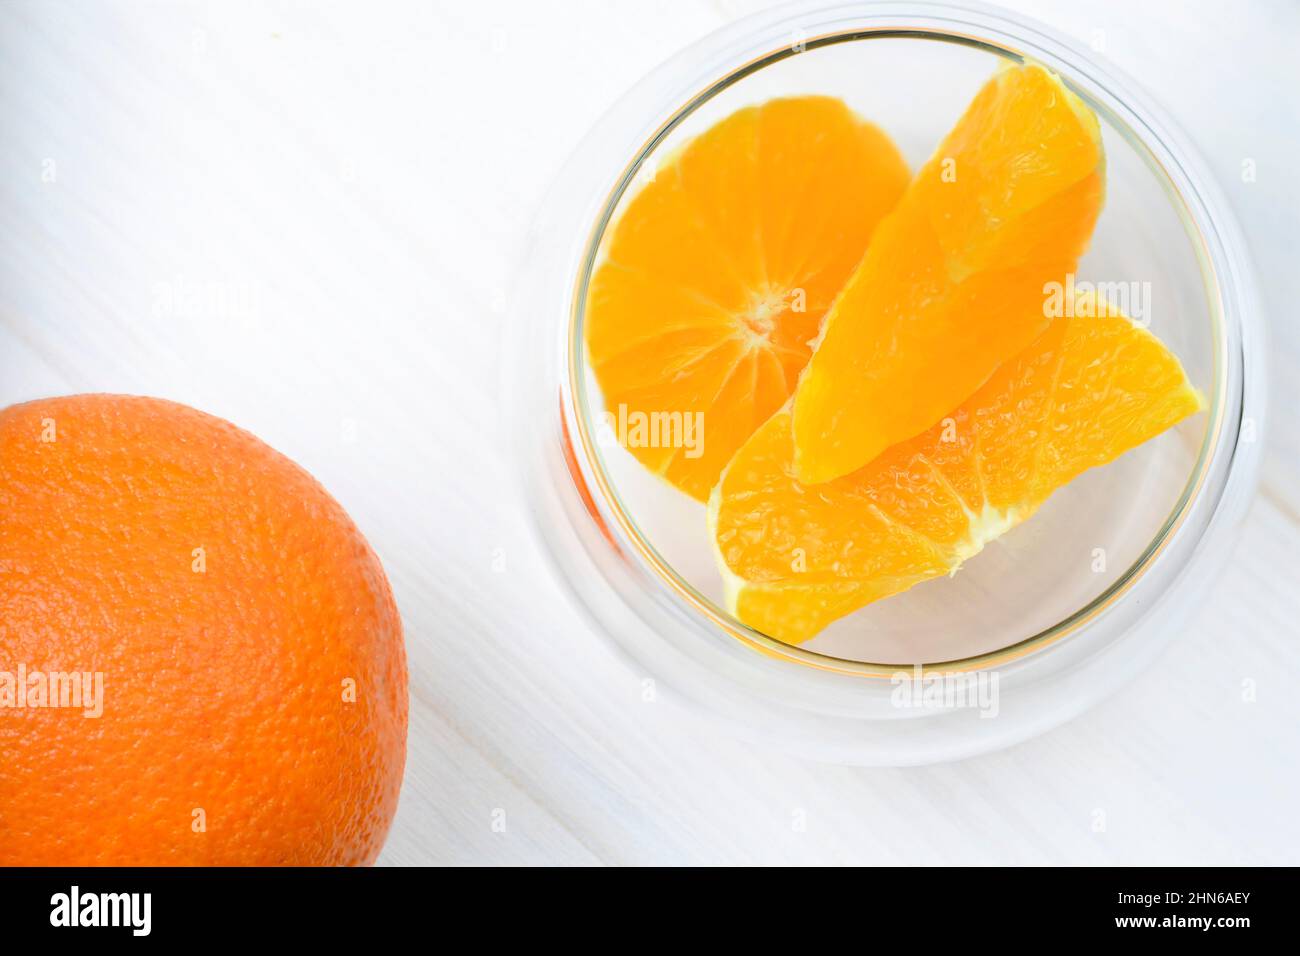 Rodajas de naranja y naranja jugosas enteras en un recipiente transparente junto a él Foto de stock